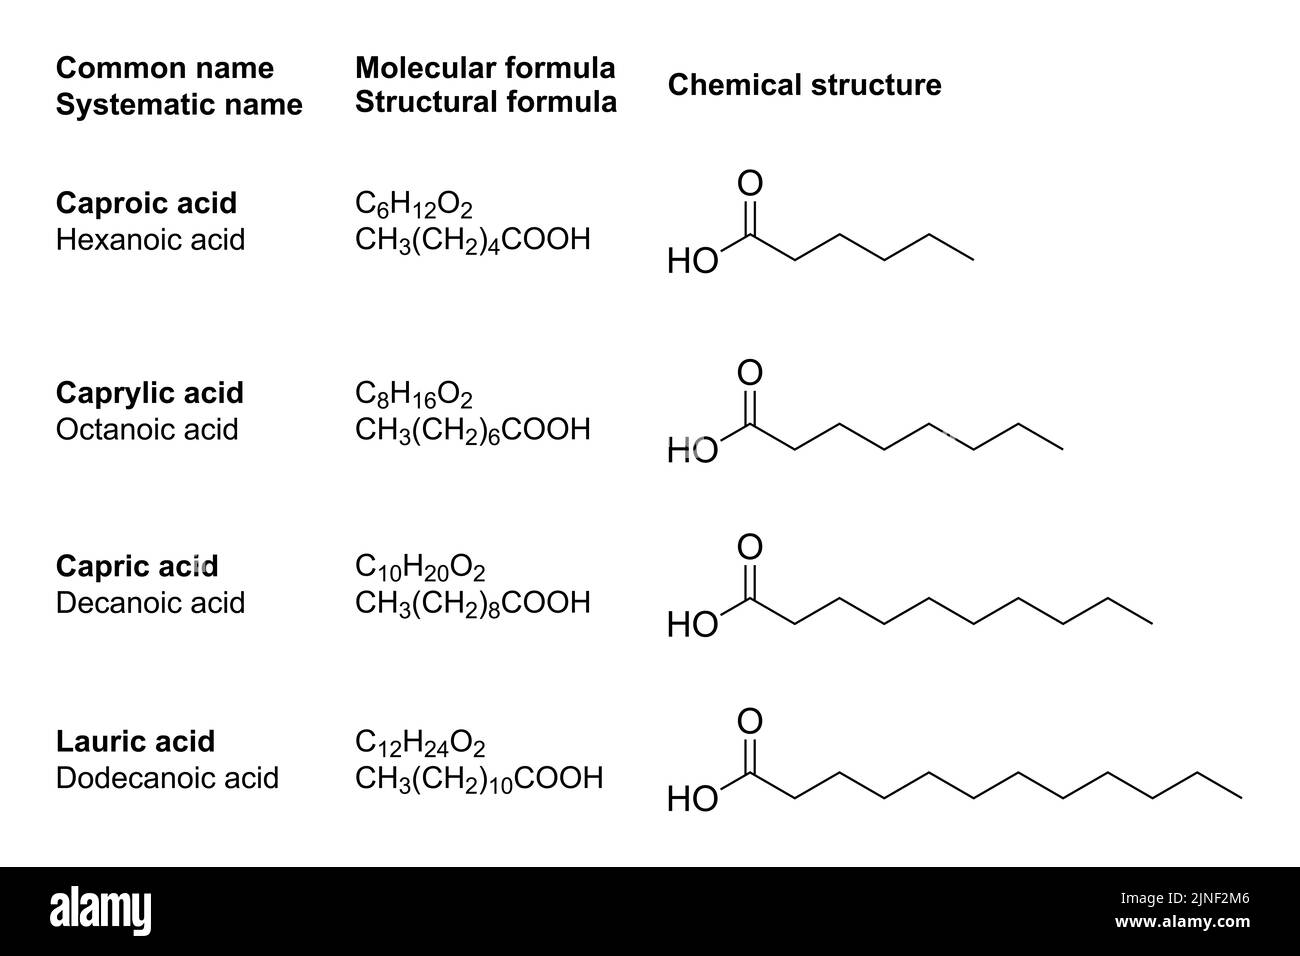 Acidi grassi a catena media, MCFA, strutture chimiche. Contenuto in trigliceridi a catena media, che producono più corpi chetonici rispetto ai normali grassi dietetici. Foto Stock